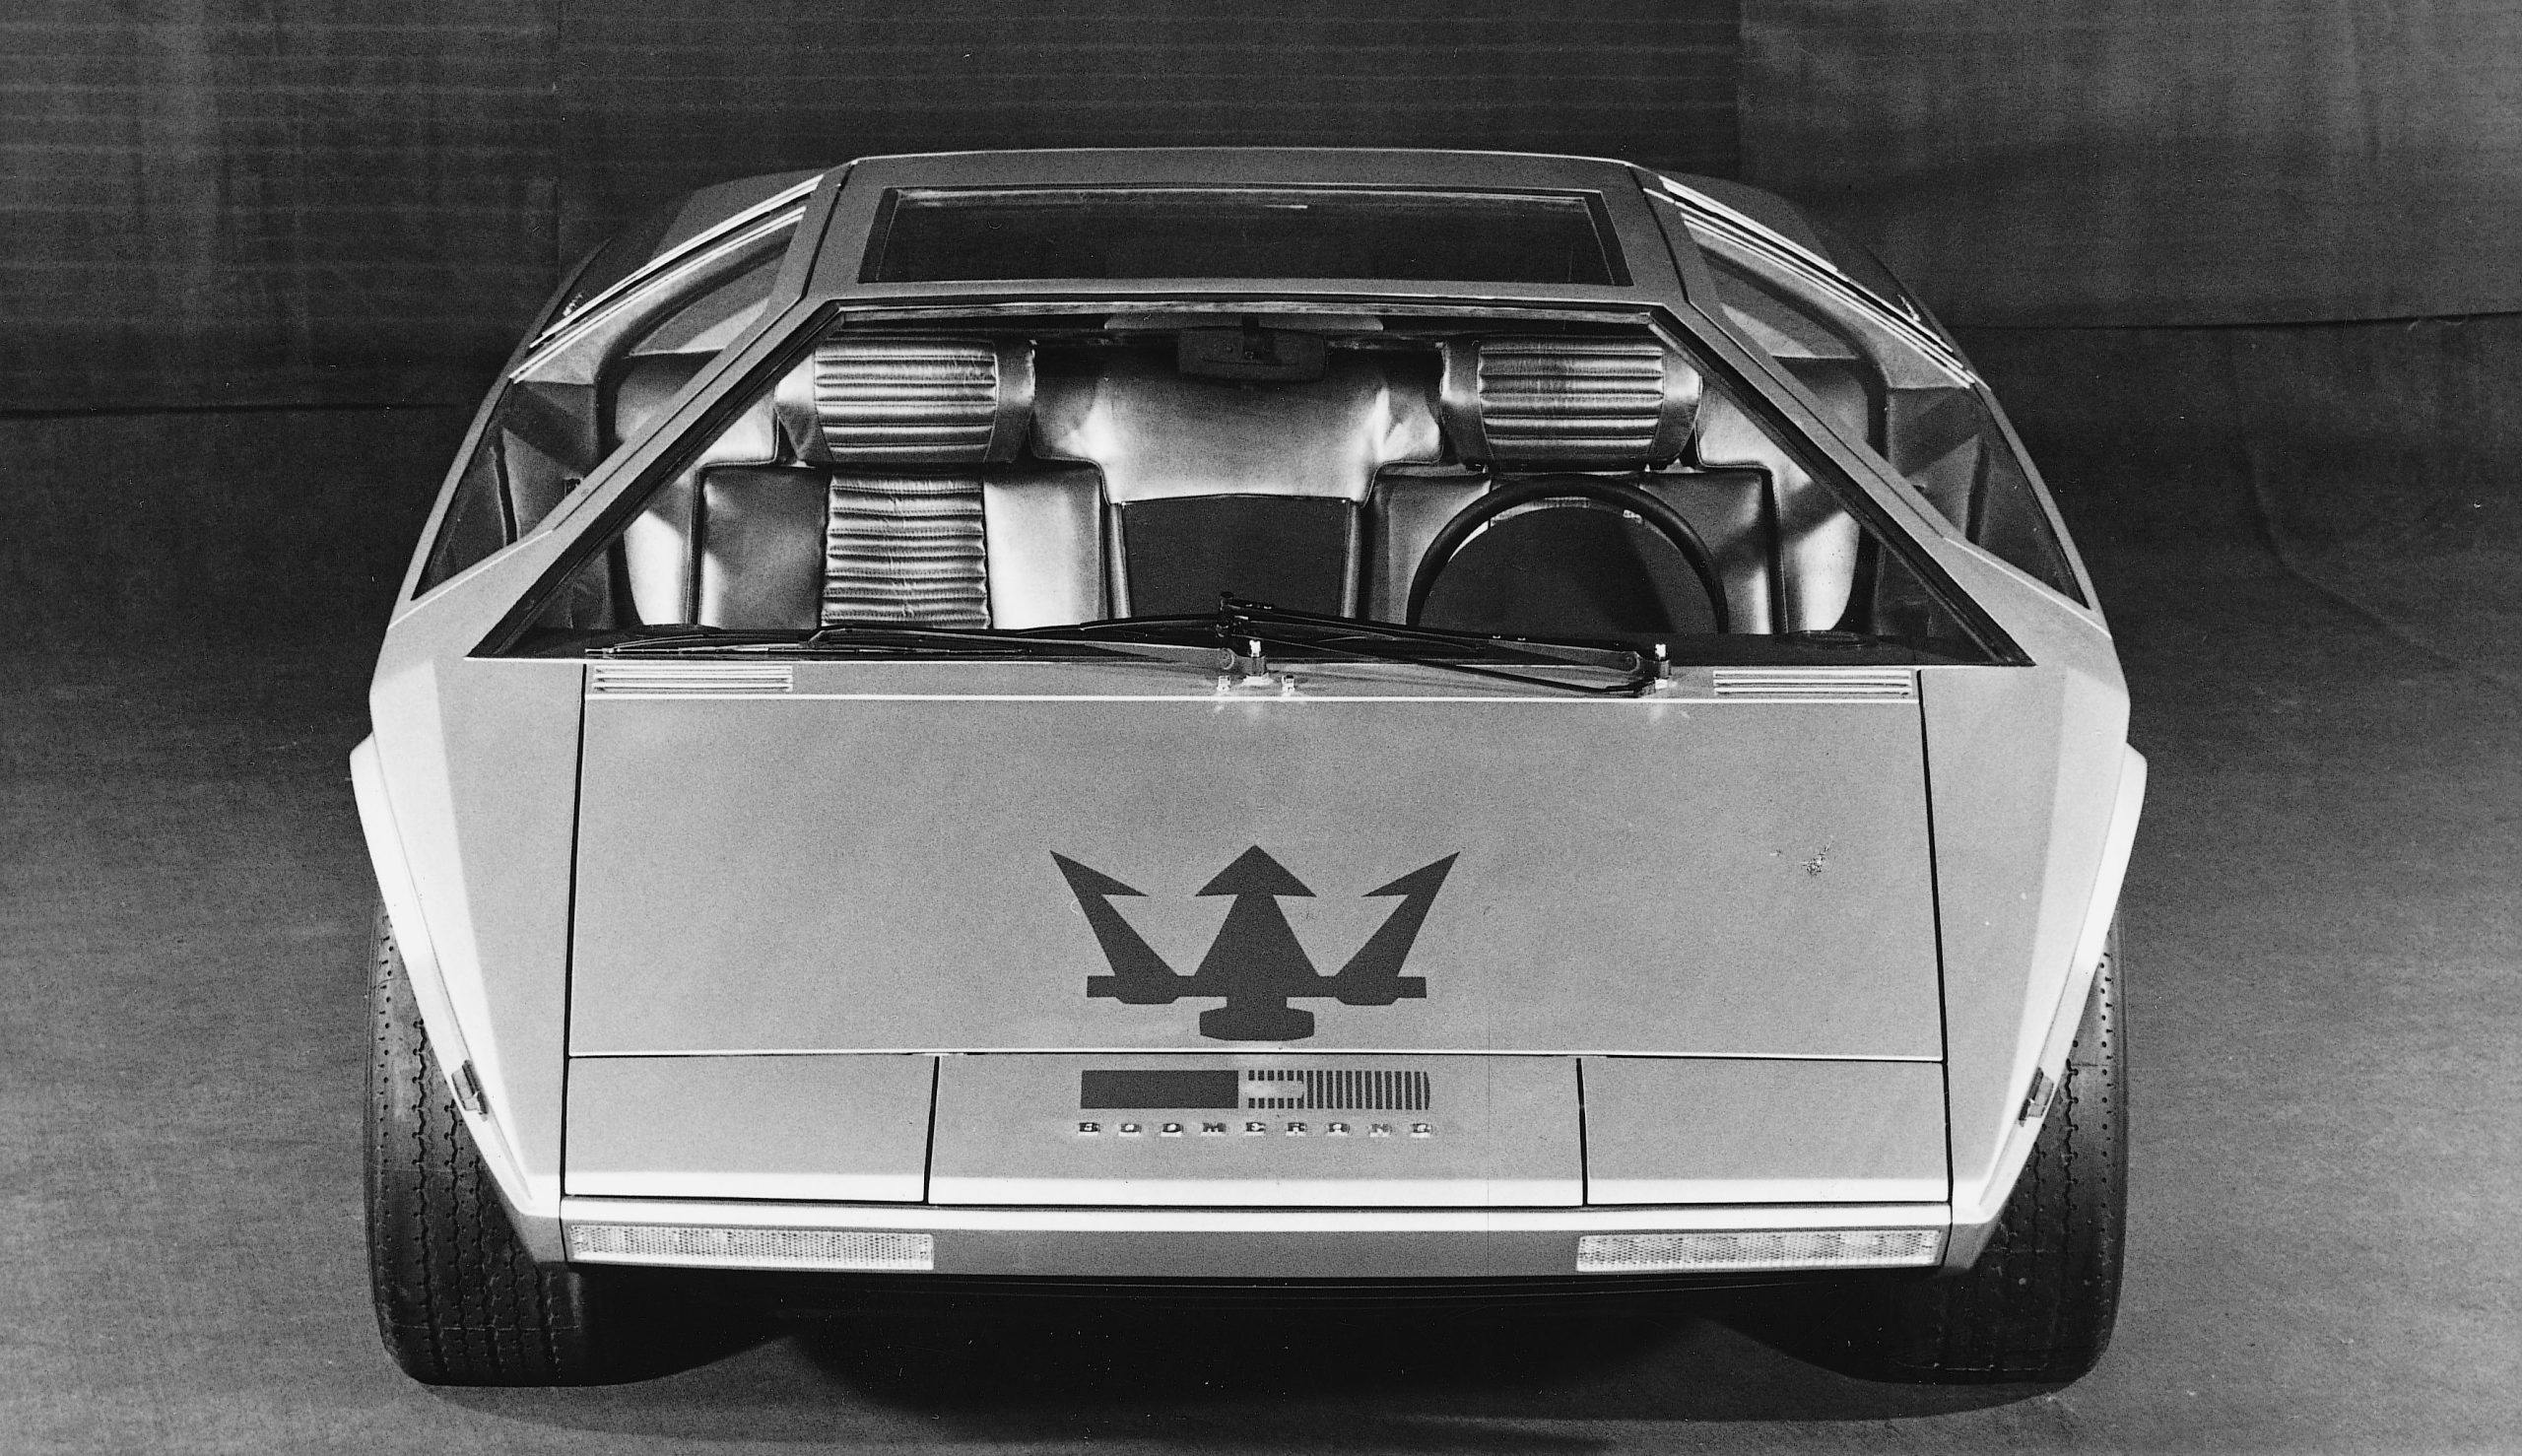 1971 Maserati Boomerang wedge concept car